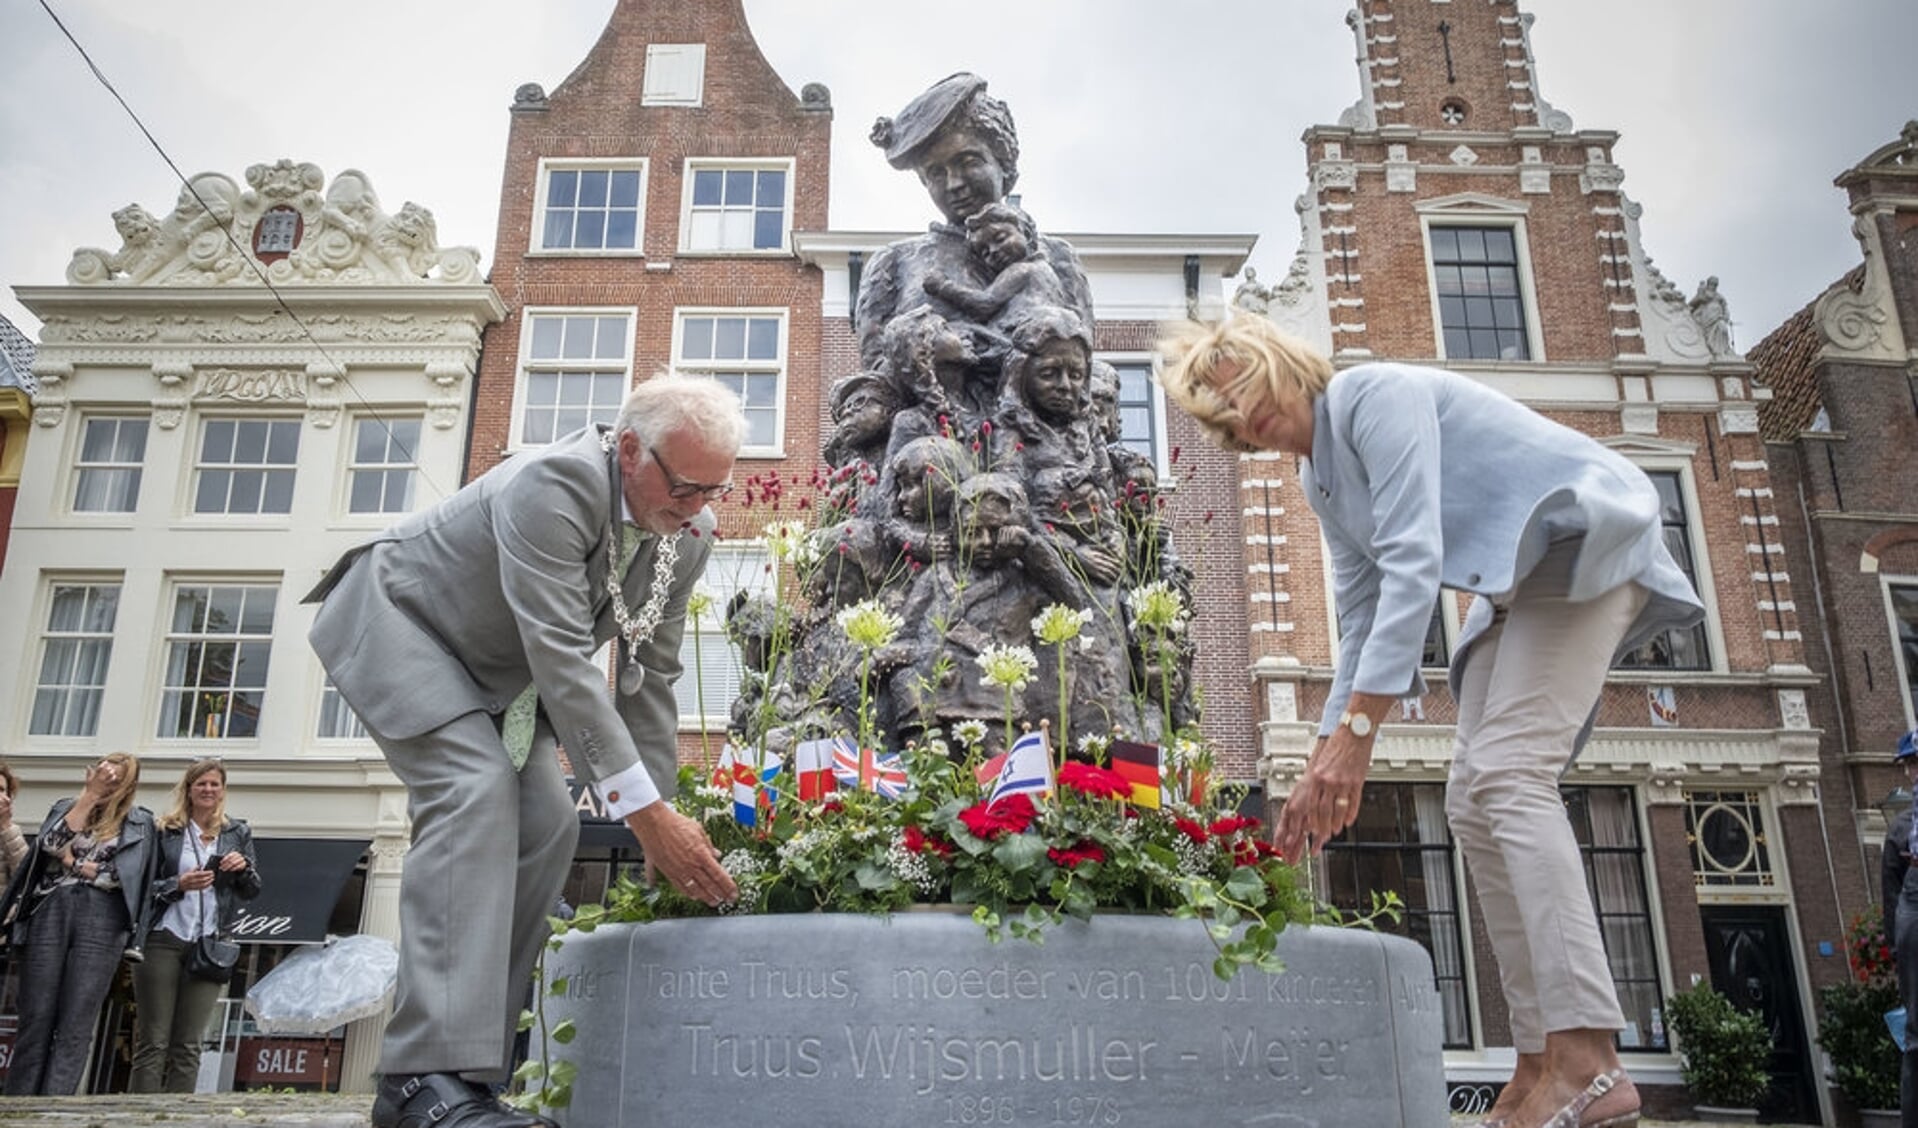 Burgemeester Piet Bruinooge en zijn echtgenote leggen een bloemstuk bij het beeld van Truus.